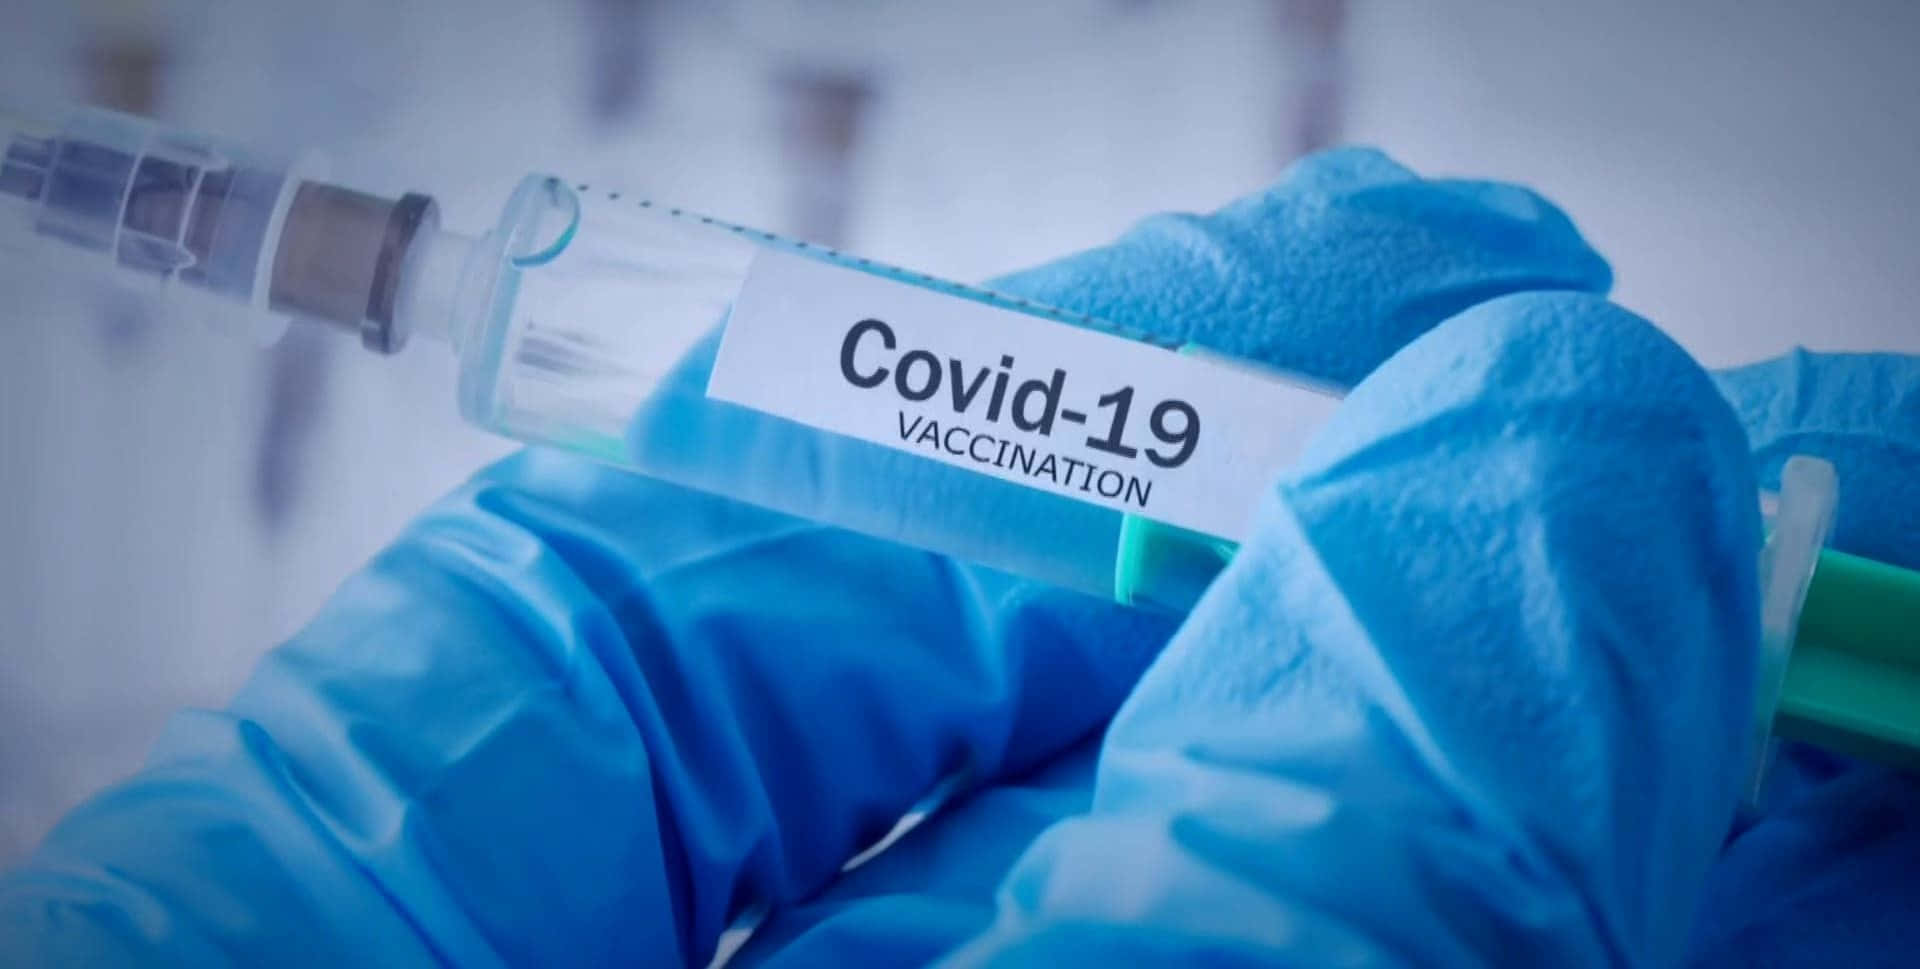 Imagende La Vacuna Contra El Covid 19 Siendo Administrada.